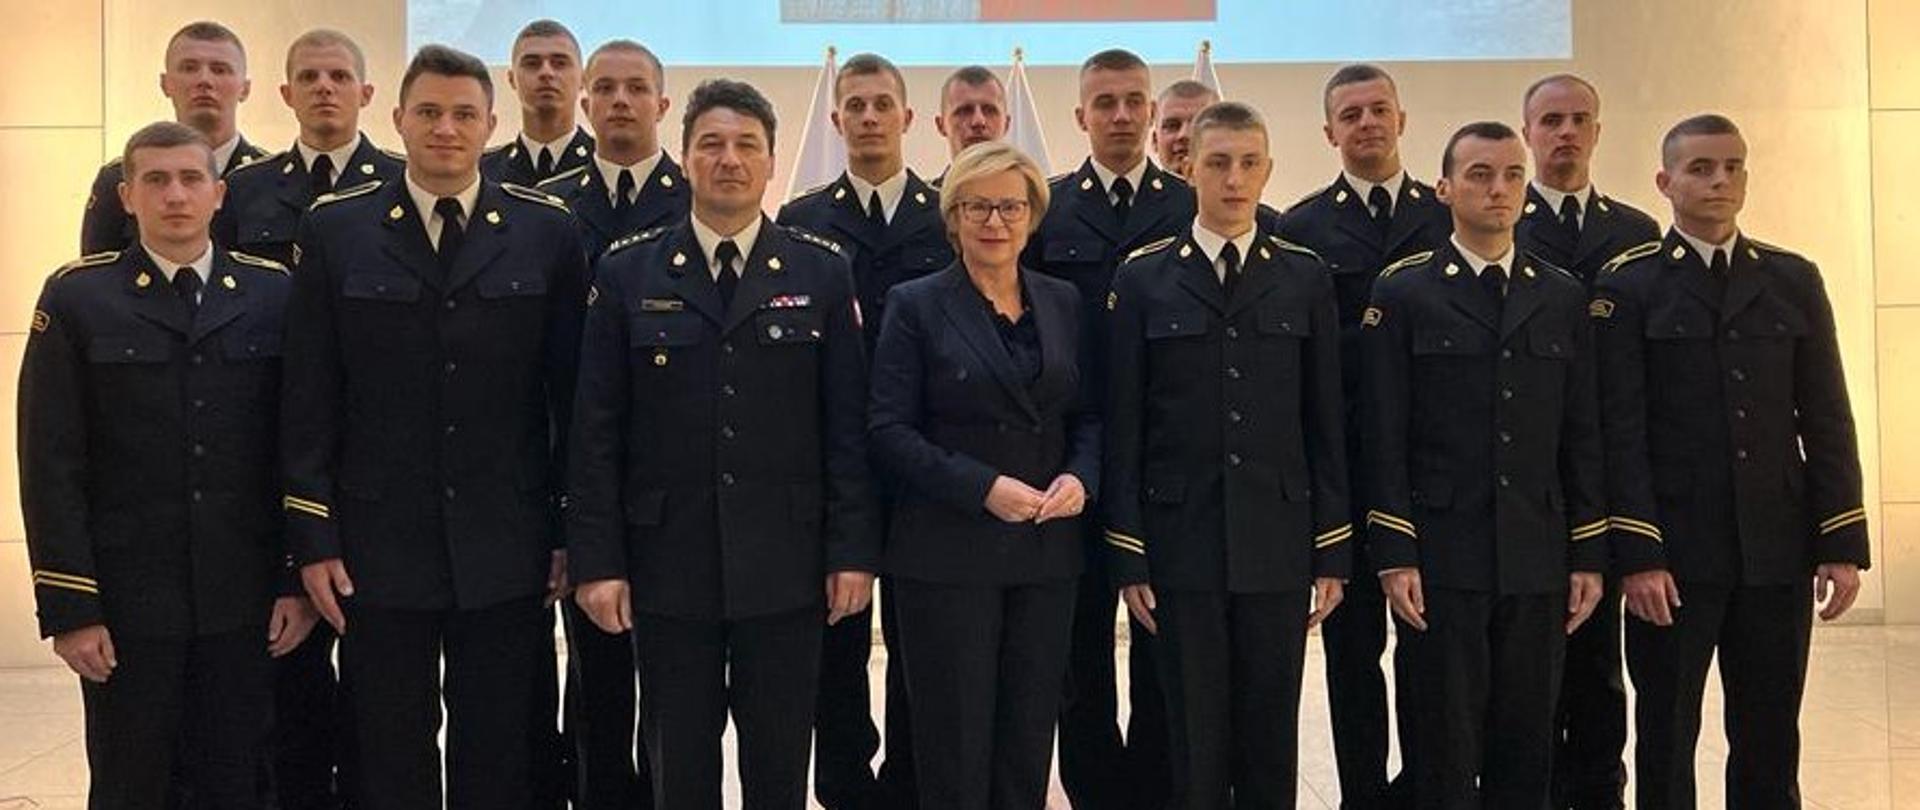 Na zdjęciu europosłanka Jadwiga Wiśniewska oraz Komendant Centralnej Szkoły PSP w otoczeniu kadetów CS PSP (15 kadetów)